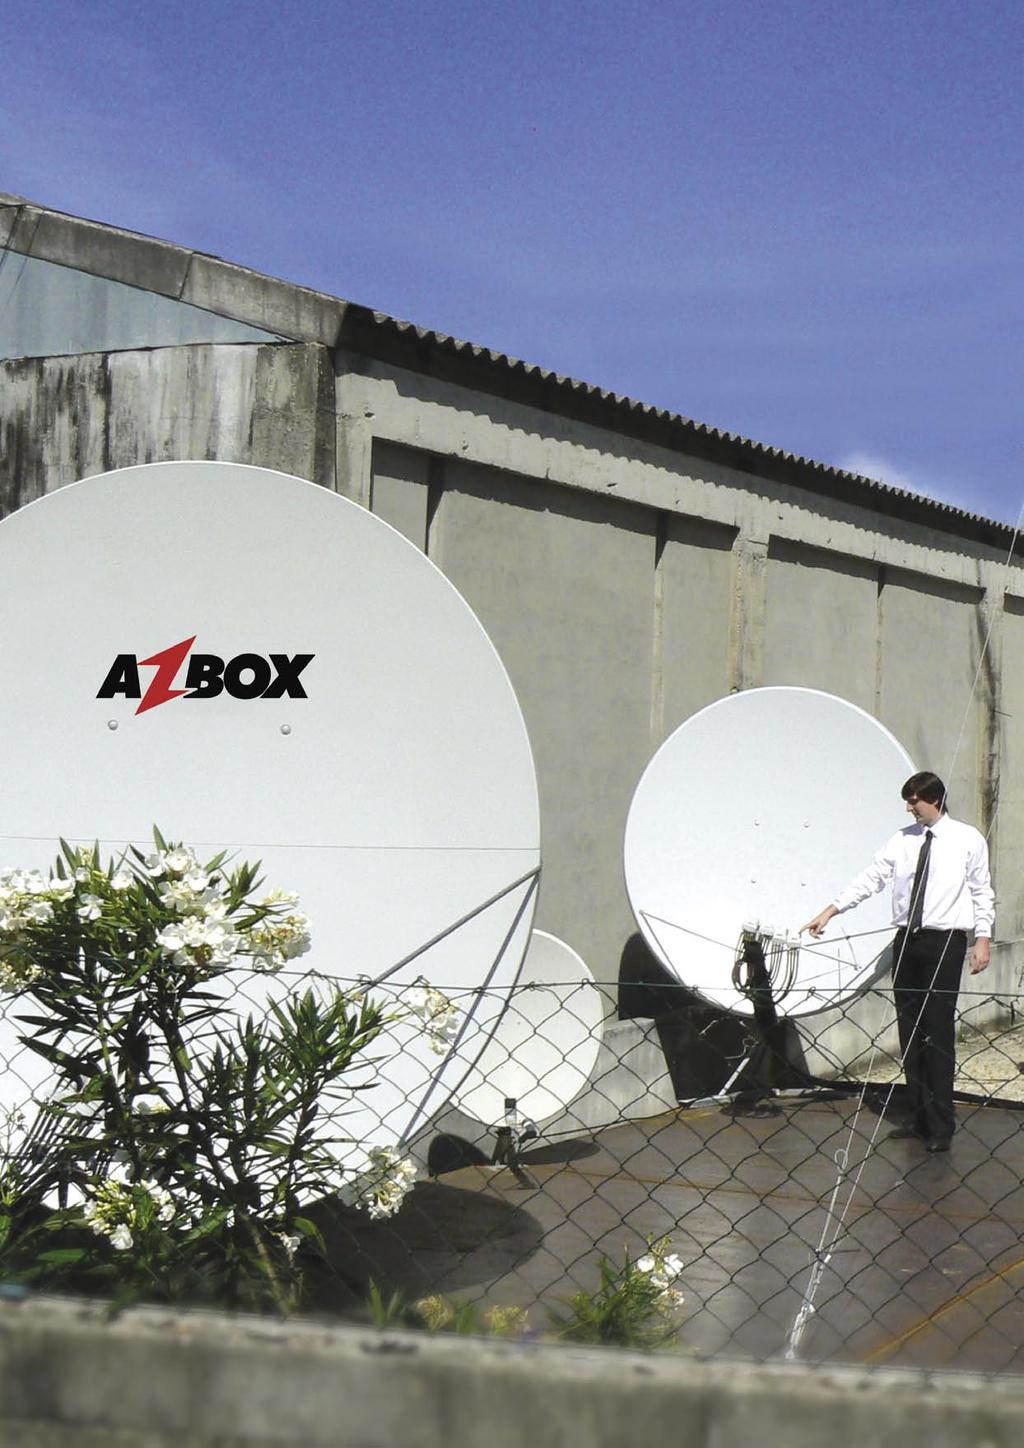 Η AZBOX έχει κάτι παραπάνω από αρκετές δορυφορικές κεραίες. Ο Hugo Condessa μας εξηγεί που είναι ευθυγραμμισμένο το κάθε LNB.